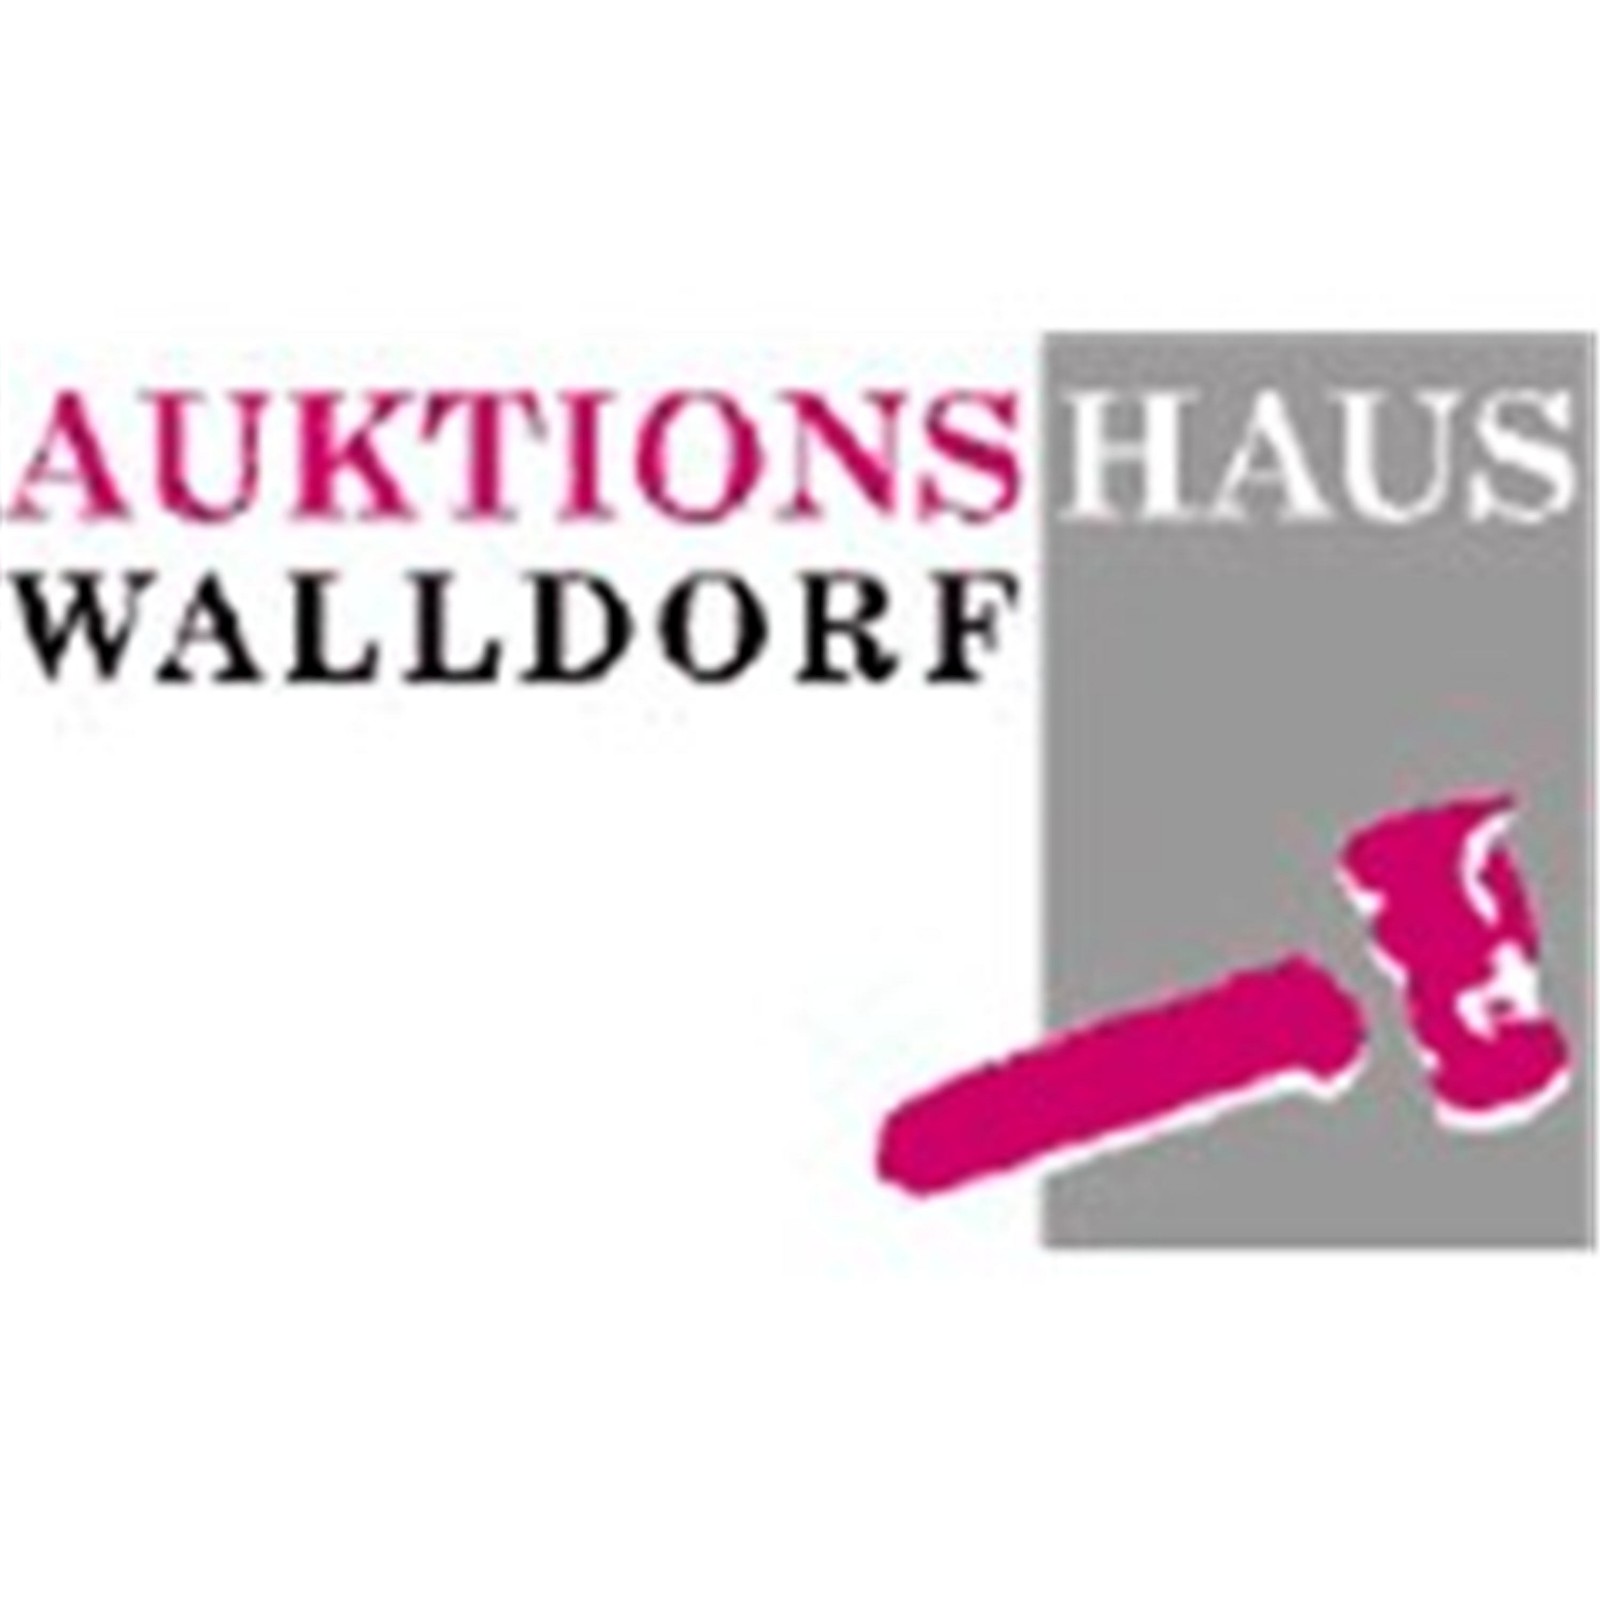 Auktionshaus Walldorf